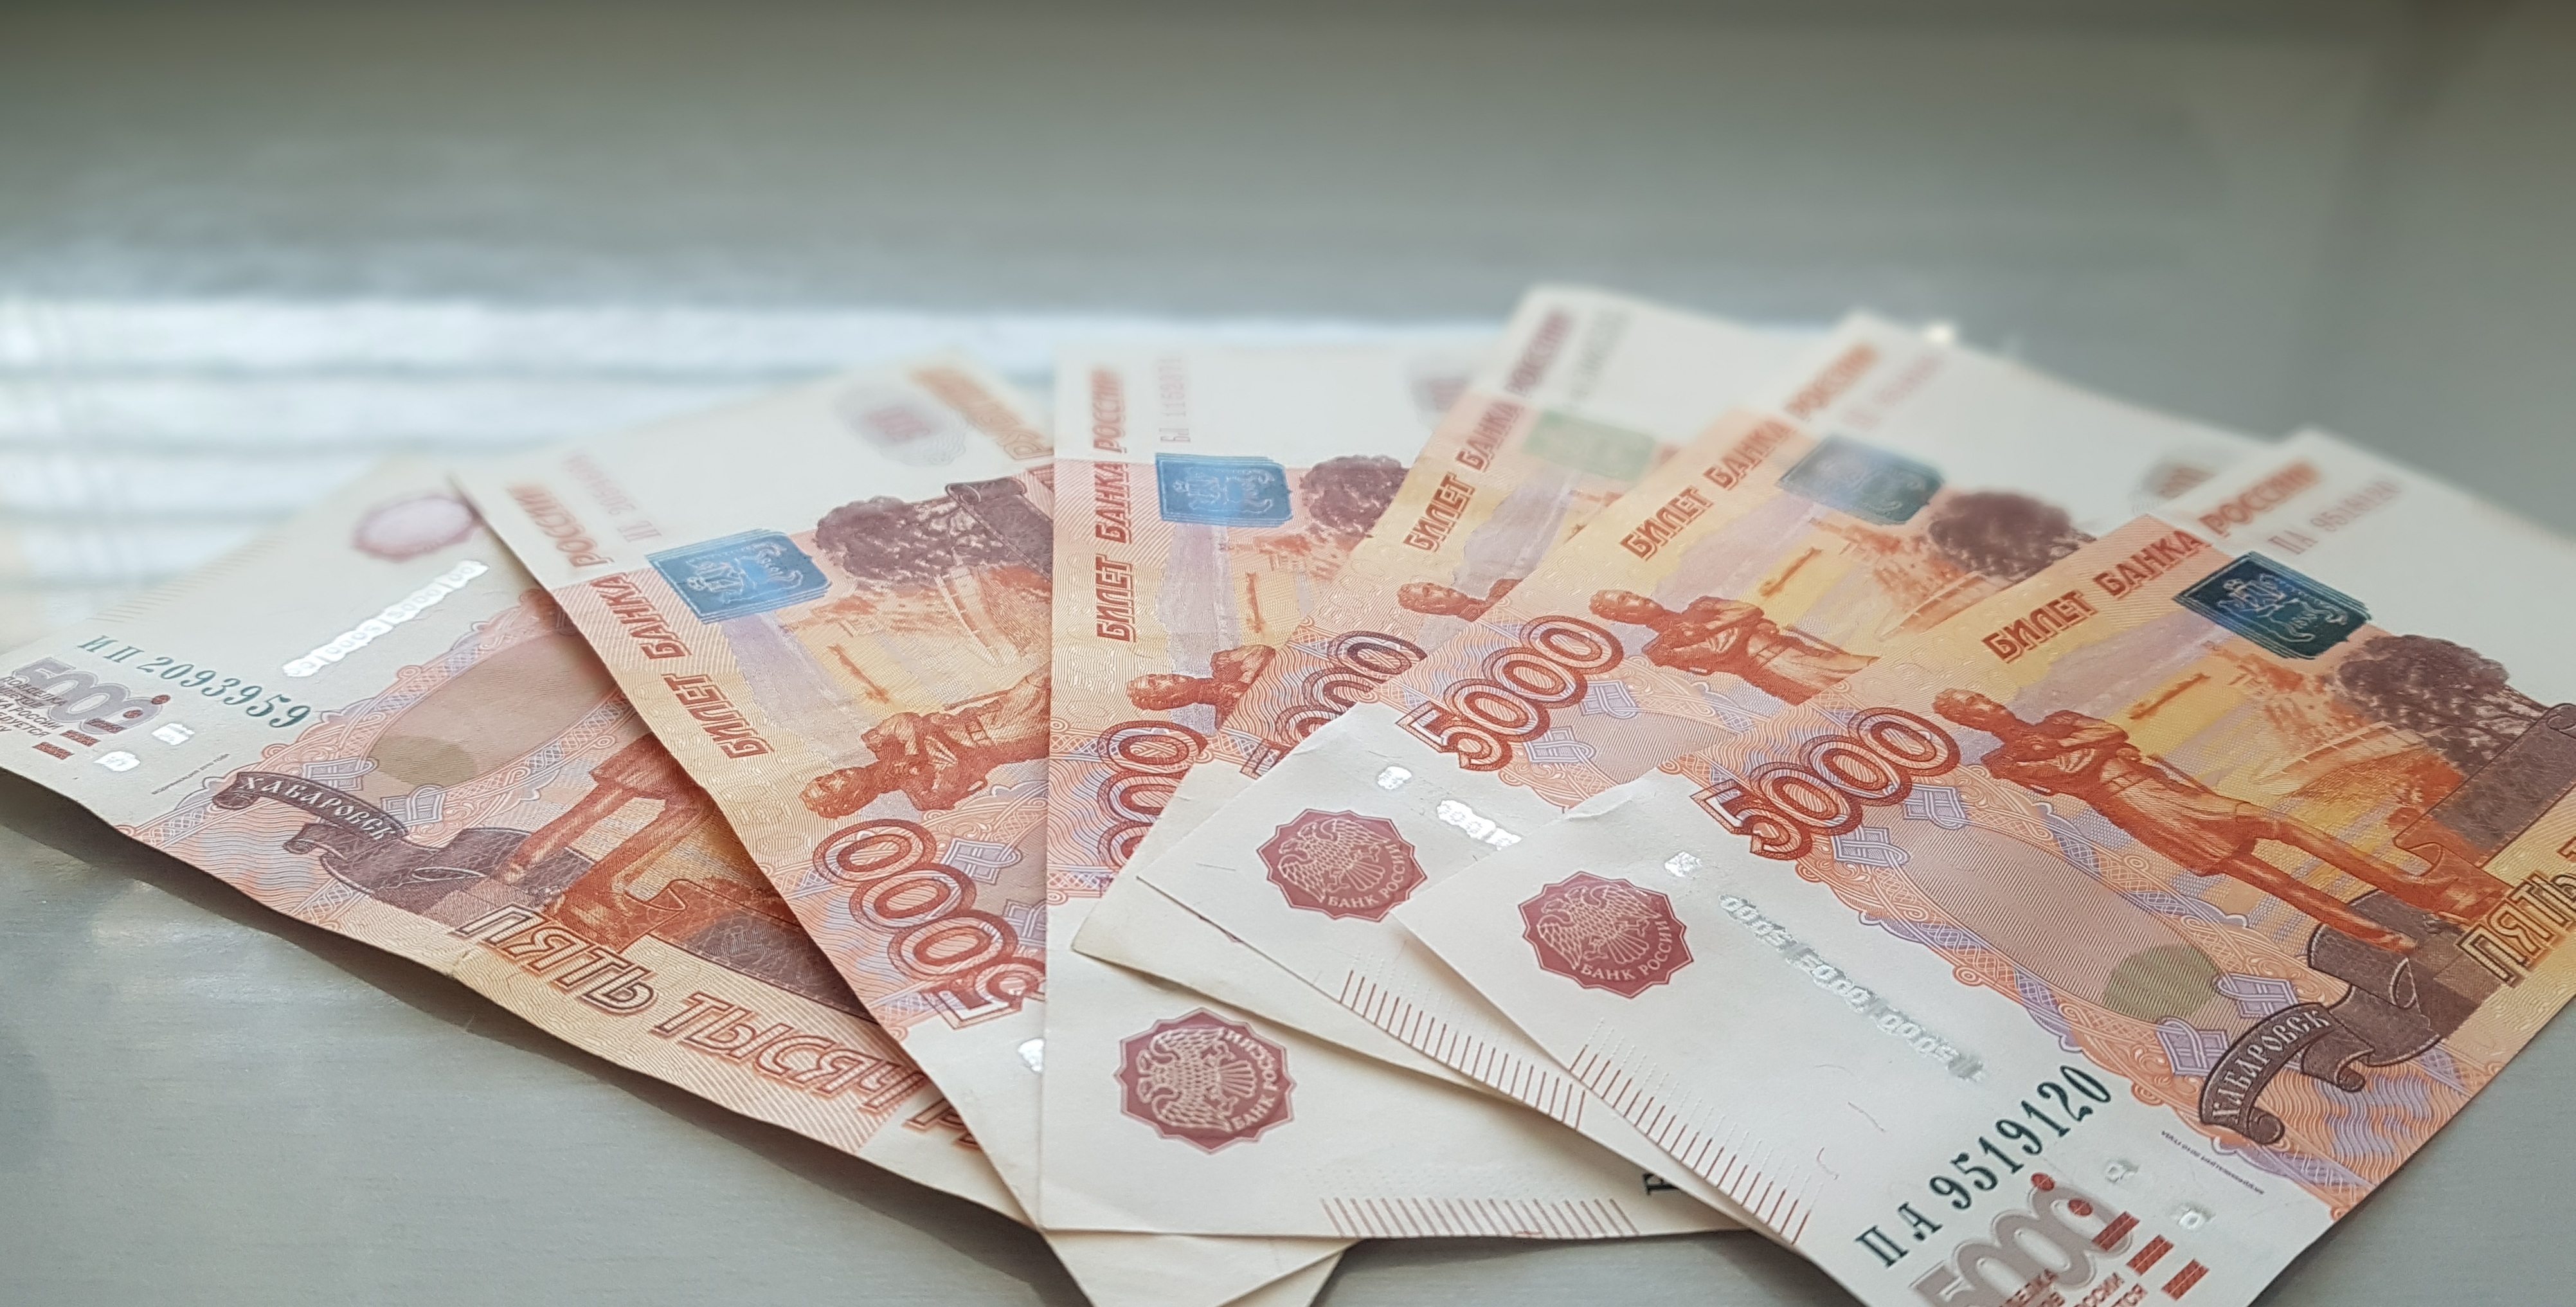 Сотрудница муниципального учреждения Башкирии присвоила бюджетные средства